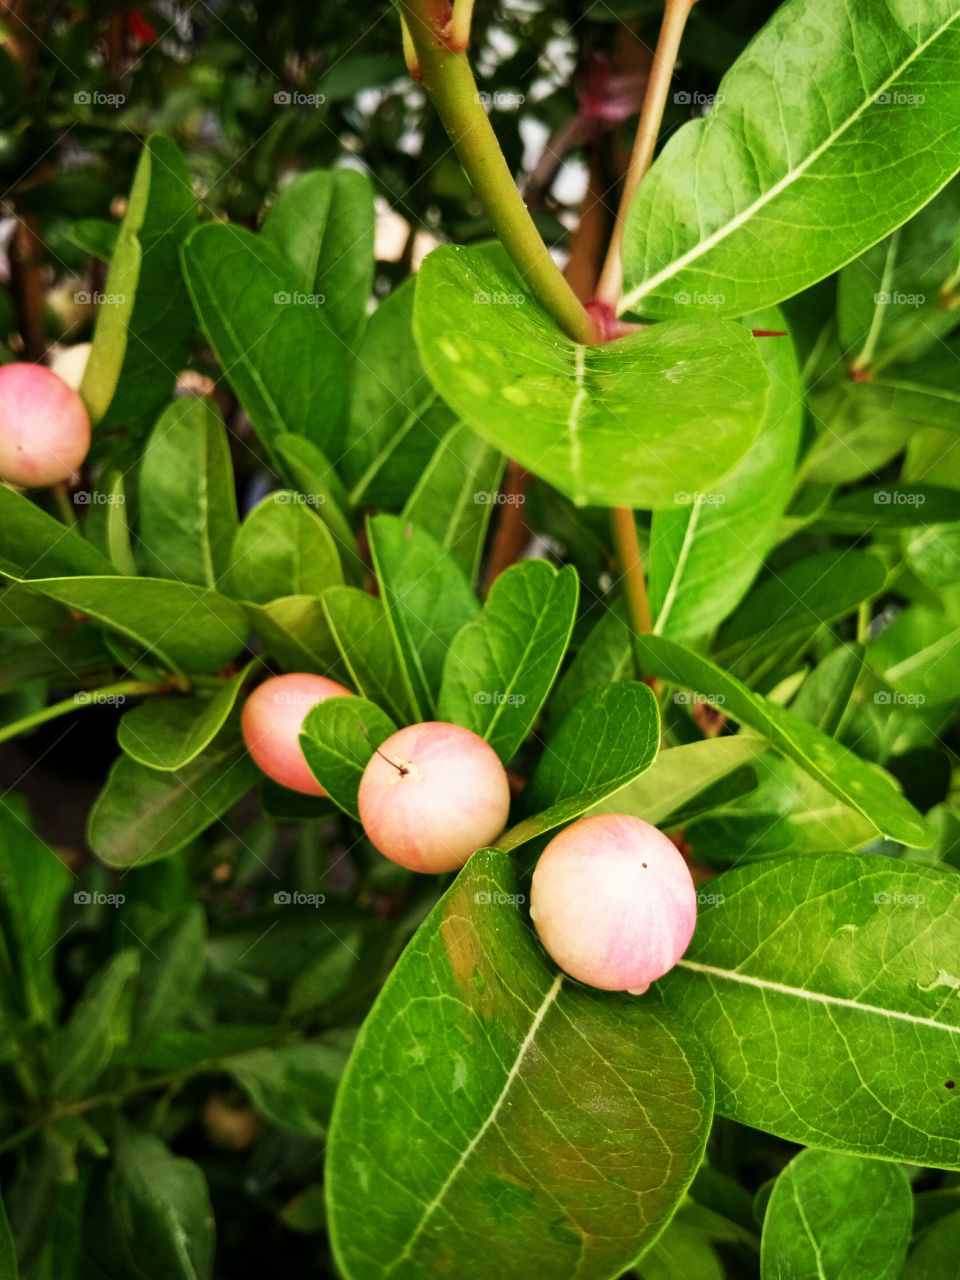 mango lime
fruit
herb